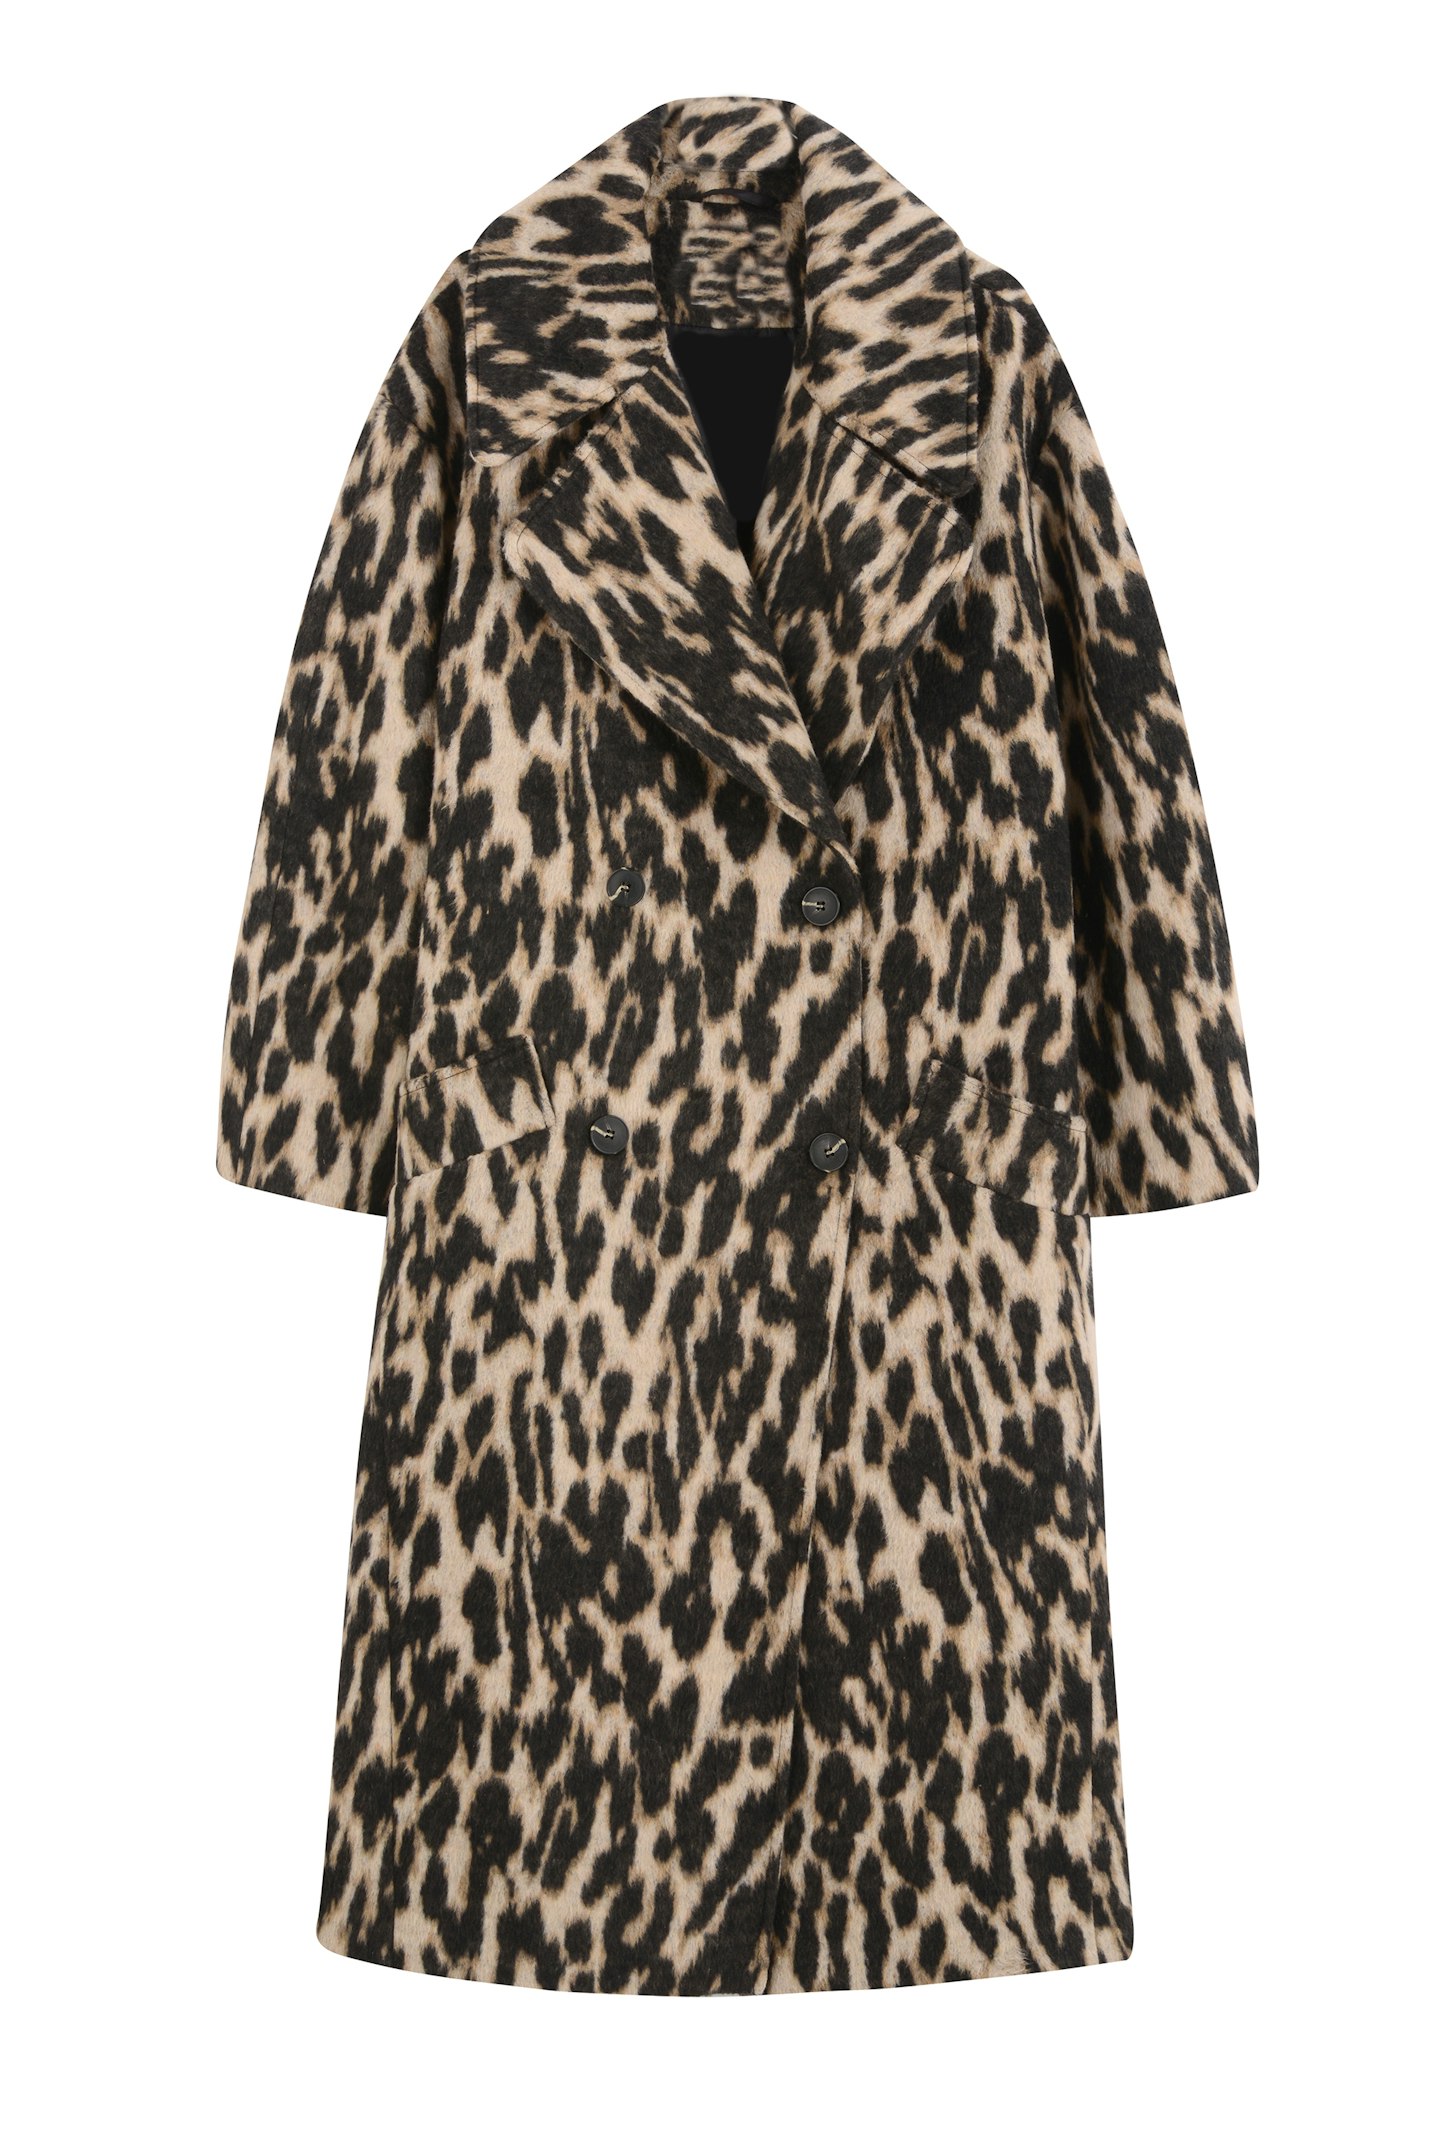 Topshop, Idol Leopard Print Maxi Coat, £99.99